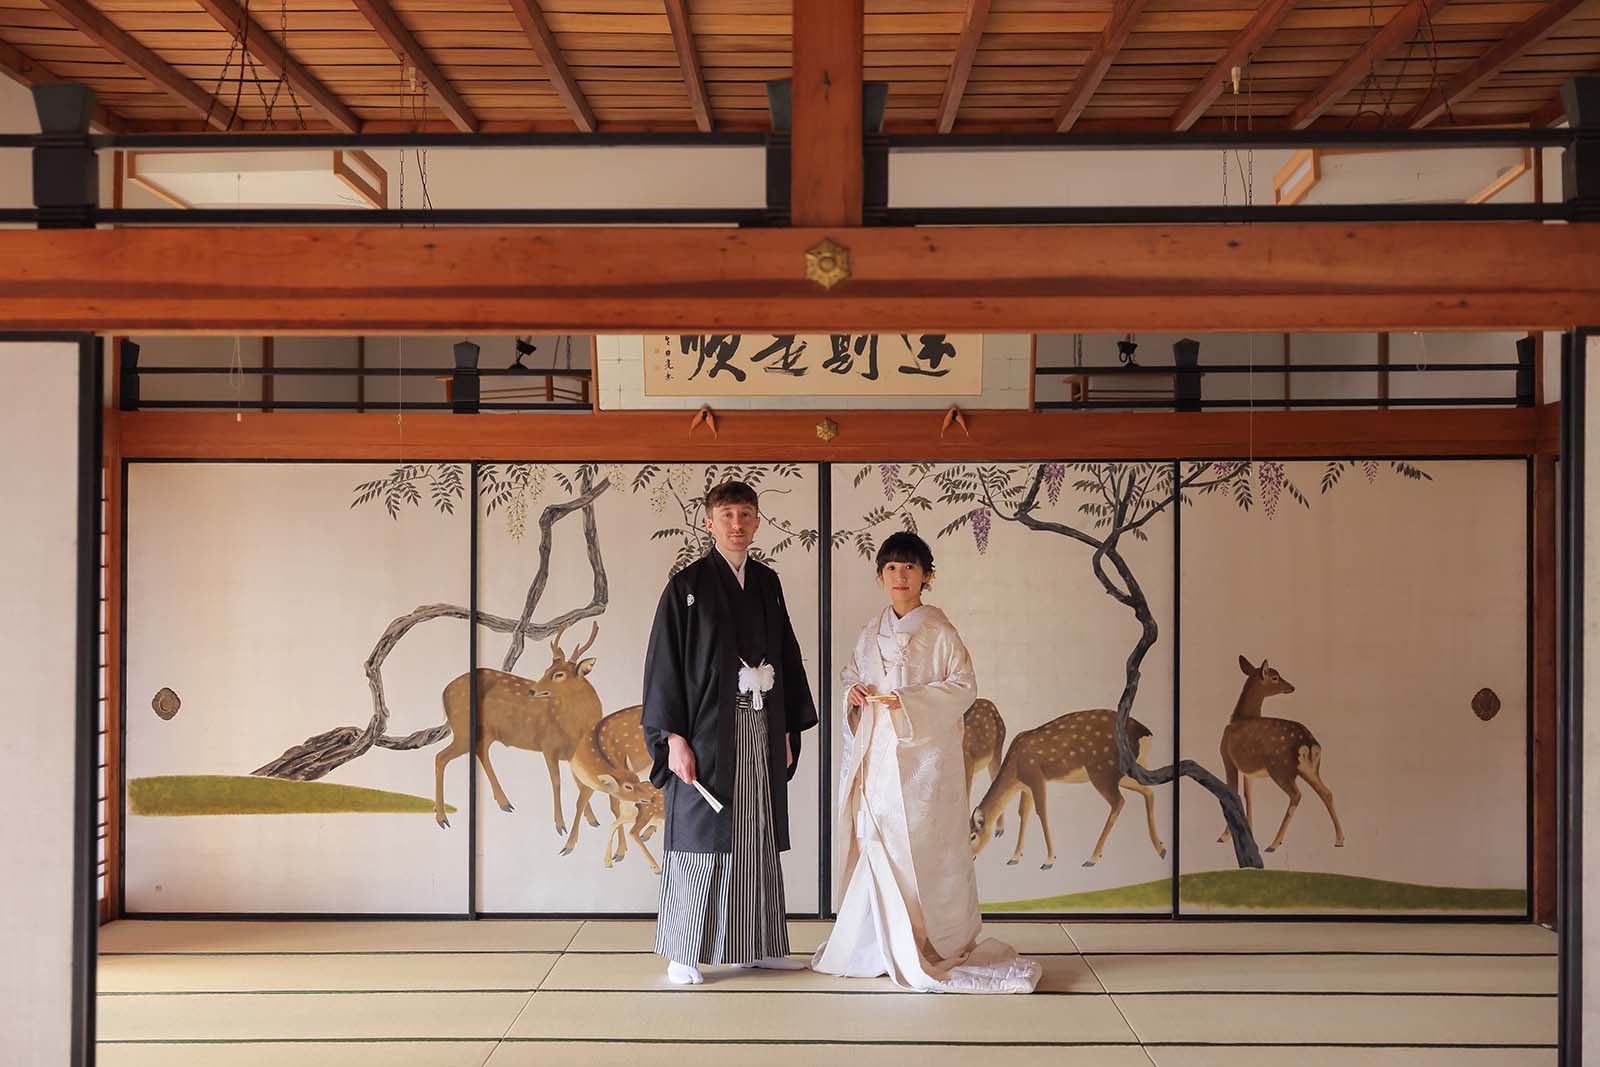 妙蓮寺様の鹿の襖絵前にて。フランスと日本の国際結婚のカップル様